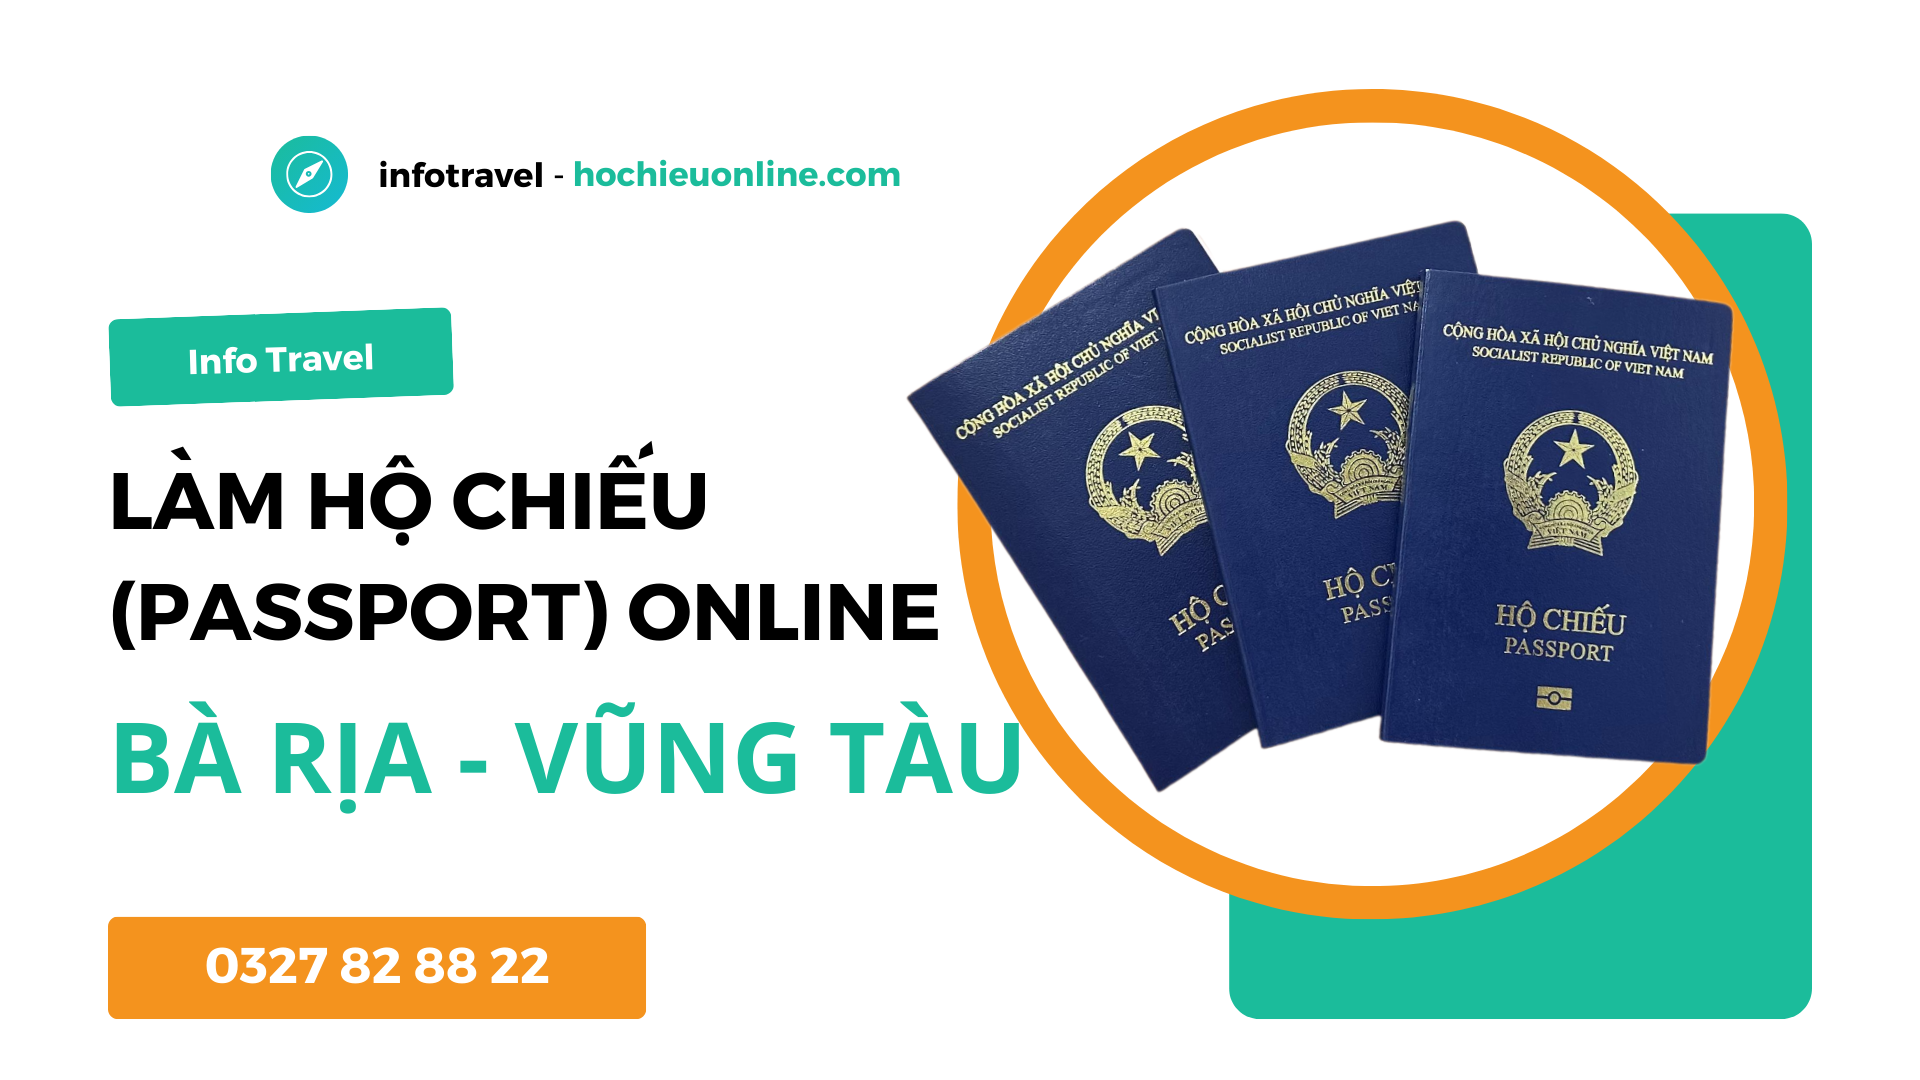 Làm hộ chiếu passport online tại tỉnh Bà Rịa - Vũng Tàu